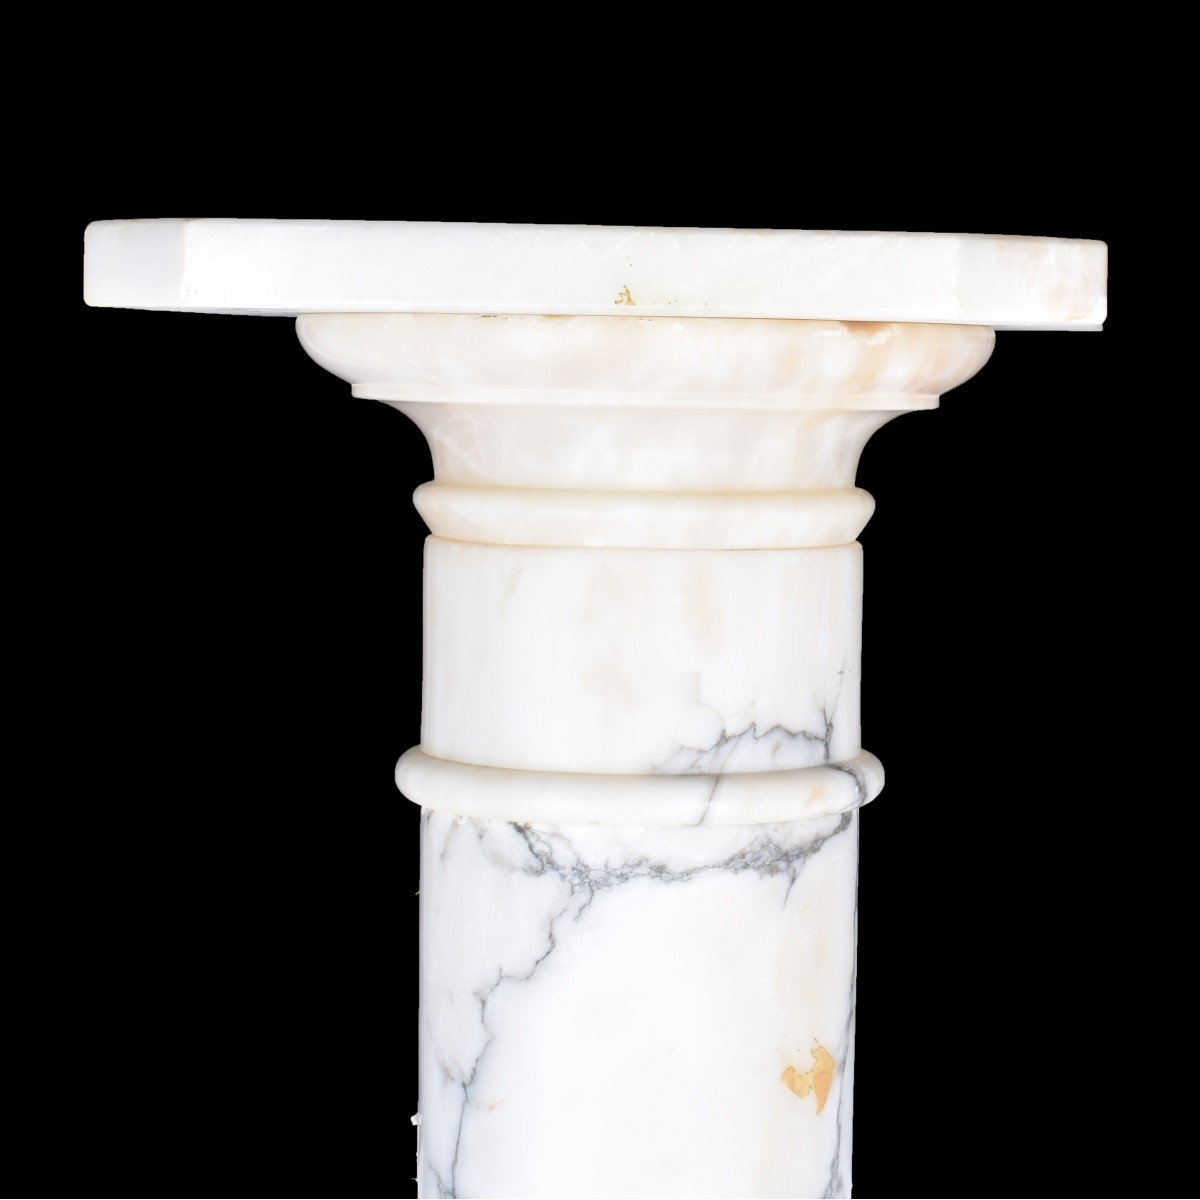 A White Carrara Marble Column Pedestal